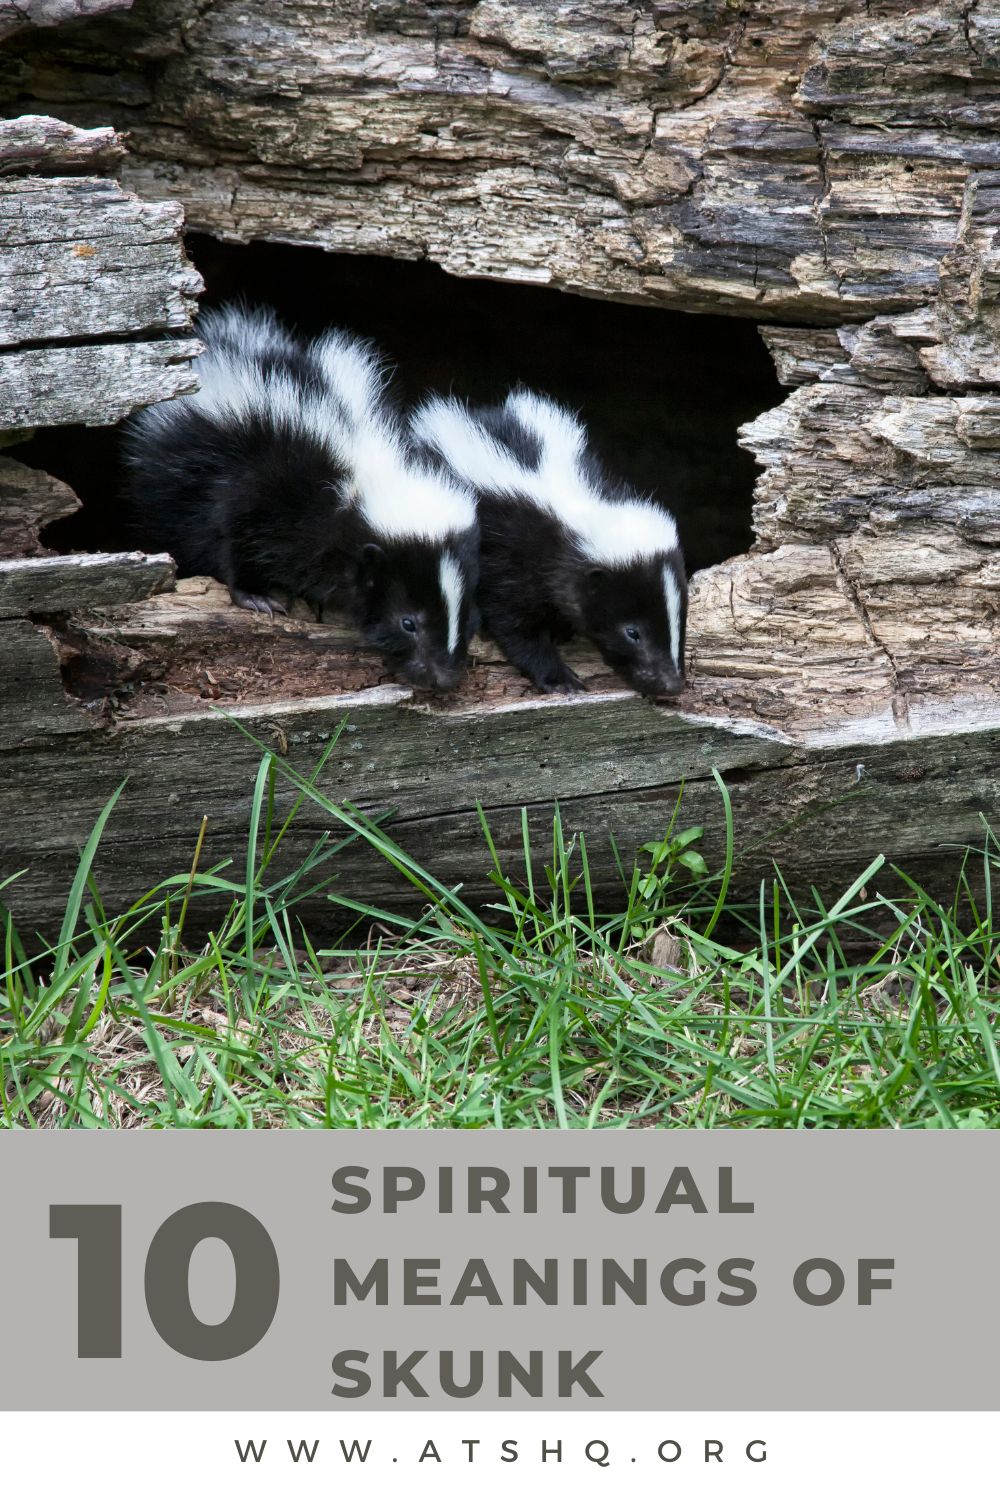 Skunk Symbolism: 10 Spiritual Meanings of Skunk